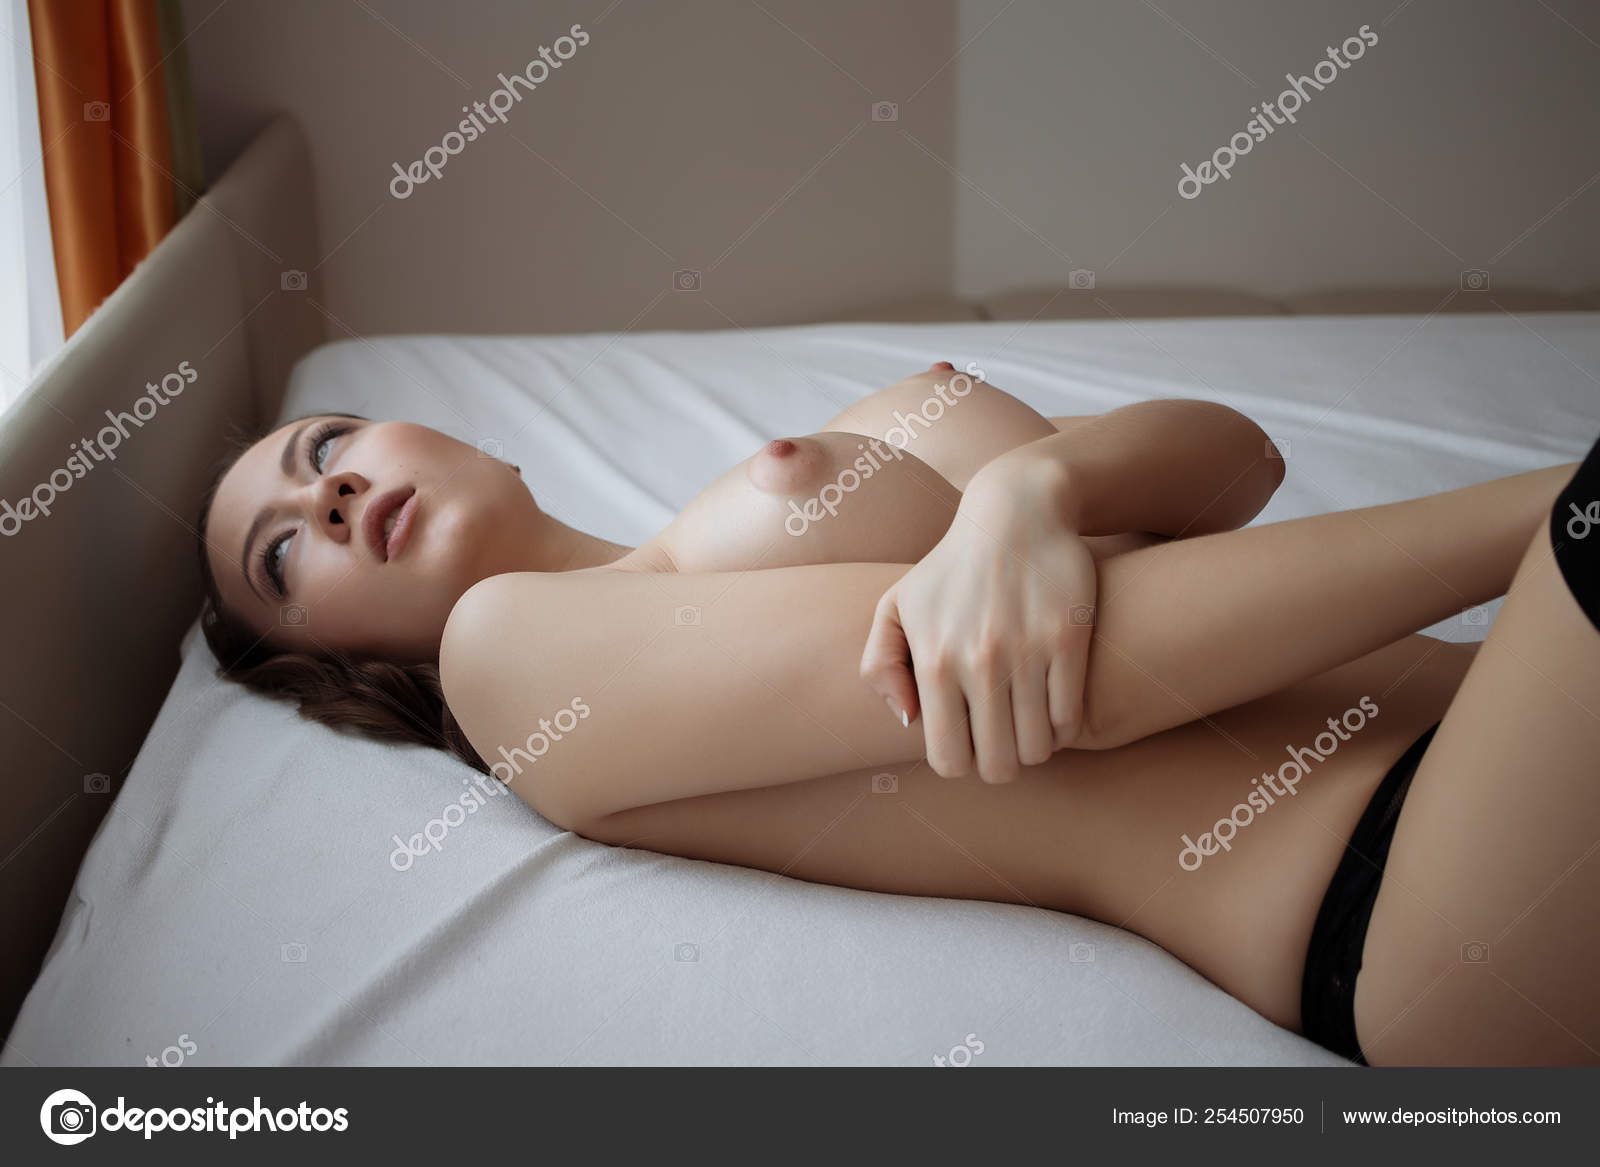 https://st4n.depositphotos.com/5034975/25450/i/1600/depositphotos_254507950-stock-photo-young-sensual-naked-woman-posing.jpg